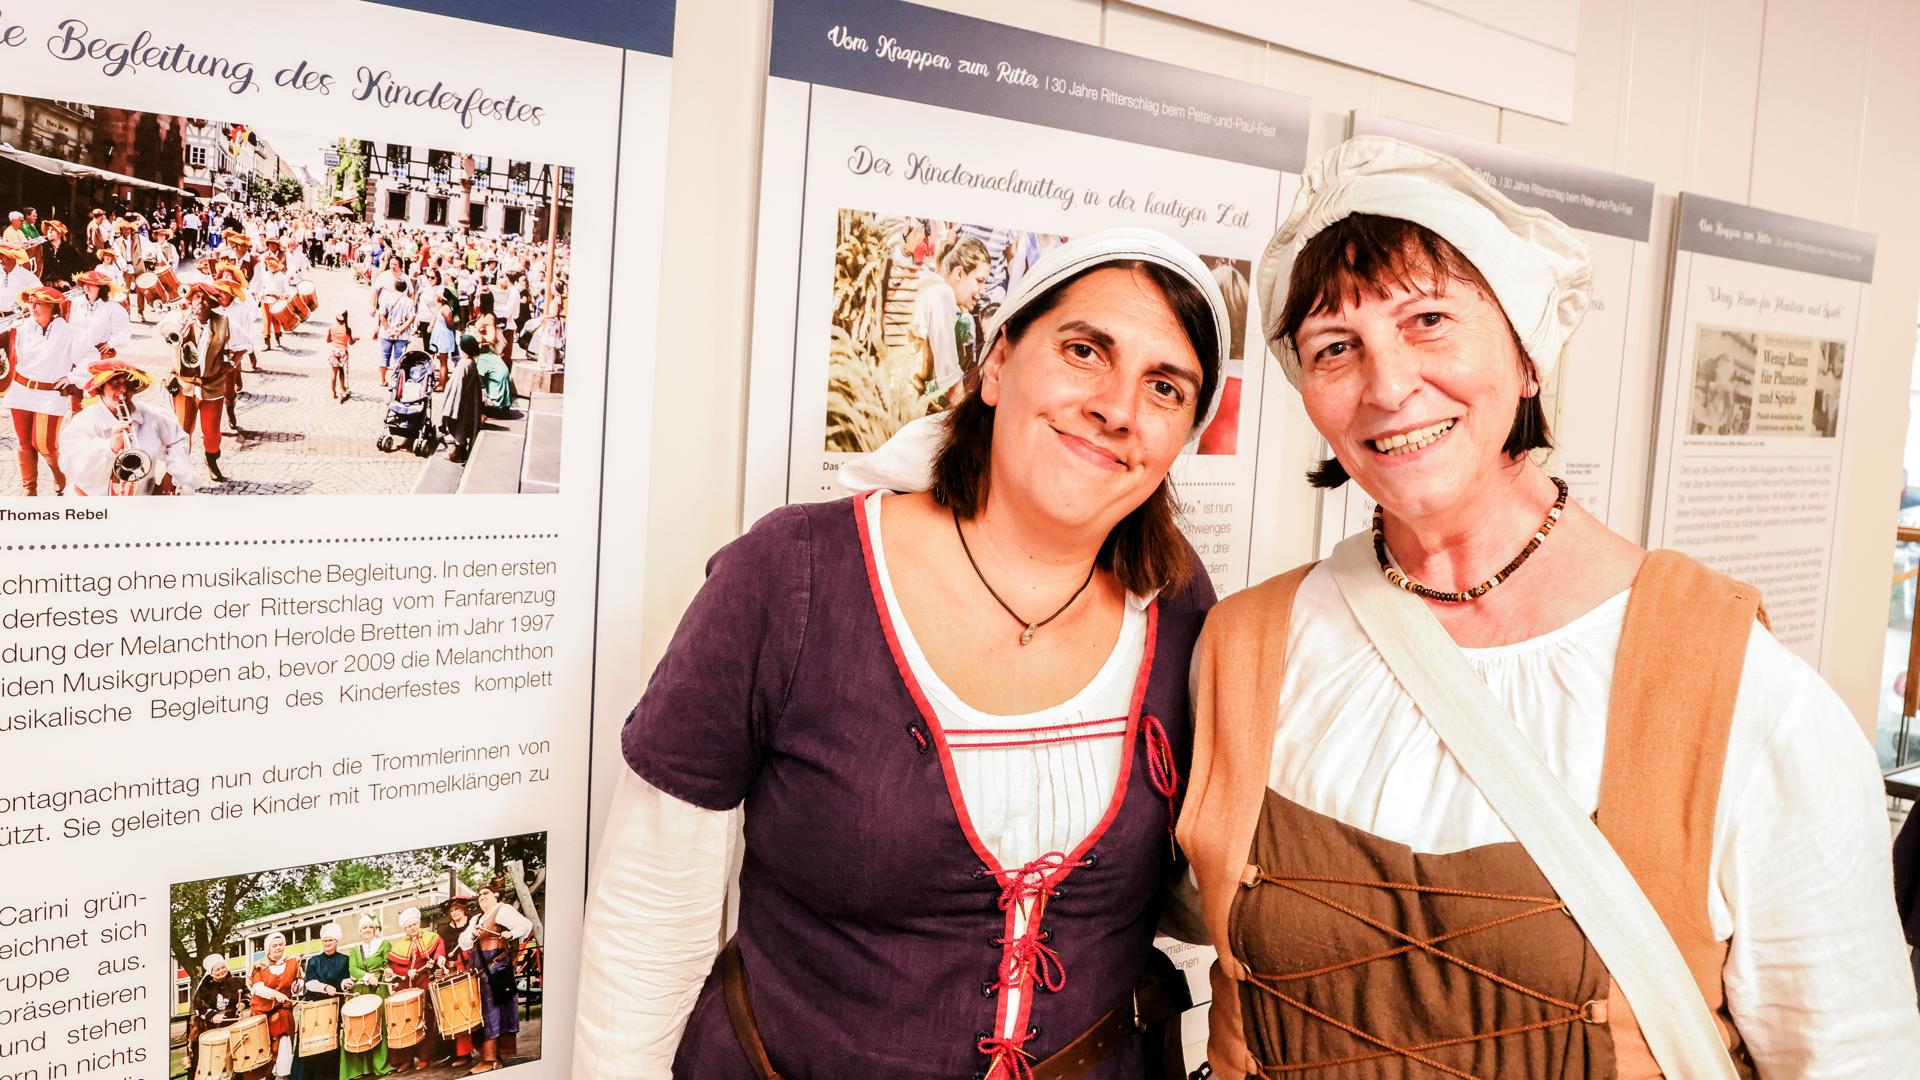 Anita Burkhardt (rechts) und ihre Tochter sind Gestalterinnen des Kinderfests und haben die Ausstellung über das Kinderfest konzipiert. 